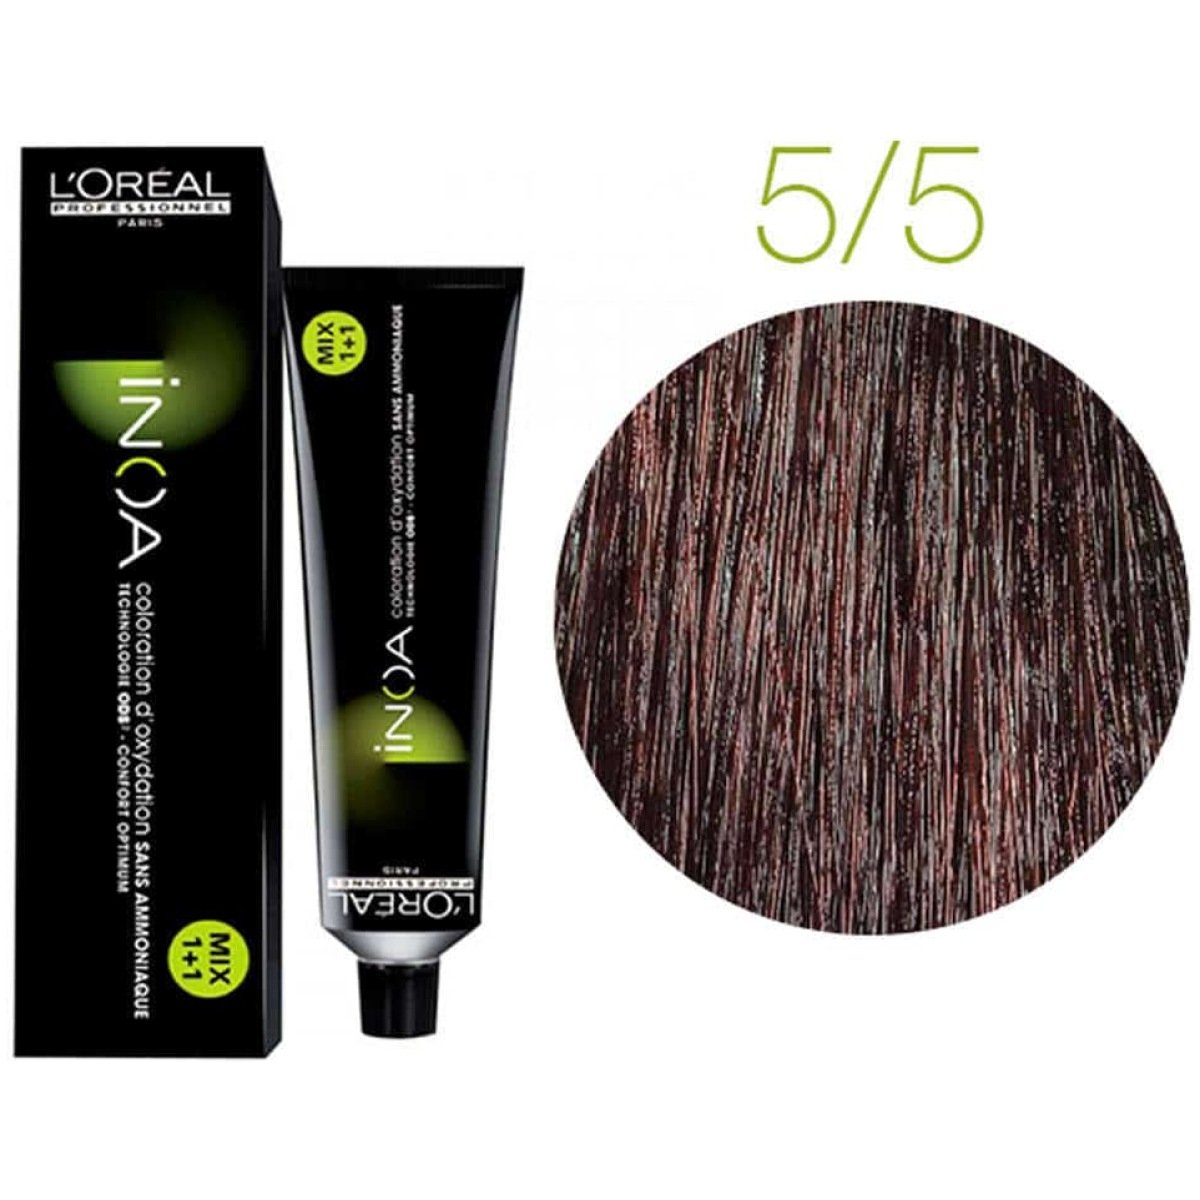 L'Oreal Inoa Ammonia Free Hair Color 60G 5.5 Light Mahogany Brown